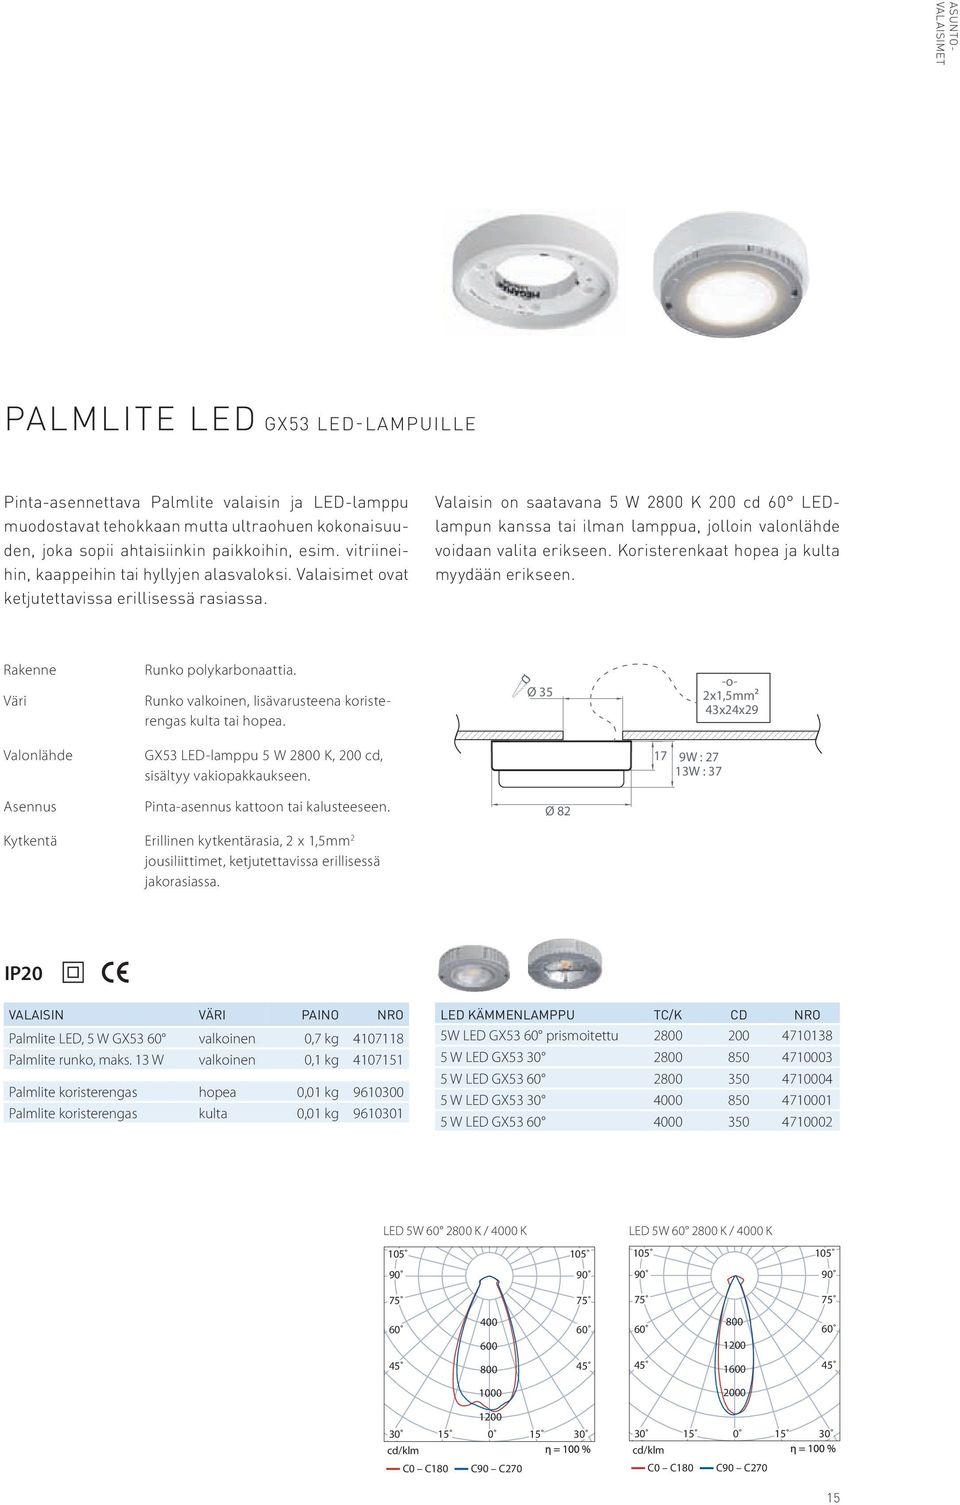 Valaisin on saatavana 5 W 2800 K 200 cd LEDlampun kanssa tai ilman lamppua, jolloin valonlähde voidaan valita erikseen. Koristerenkaat hopea ja kulta myydään erikseen.